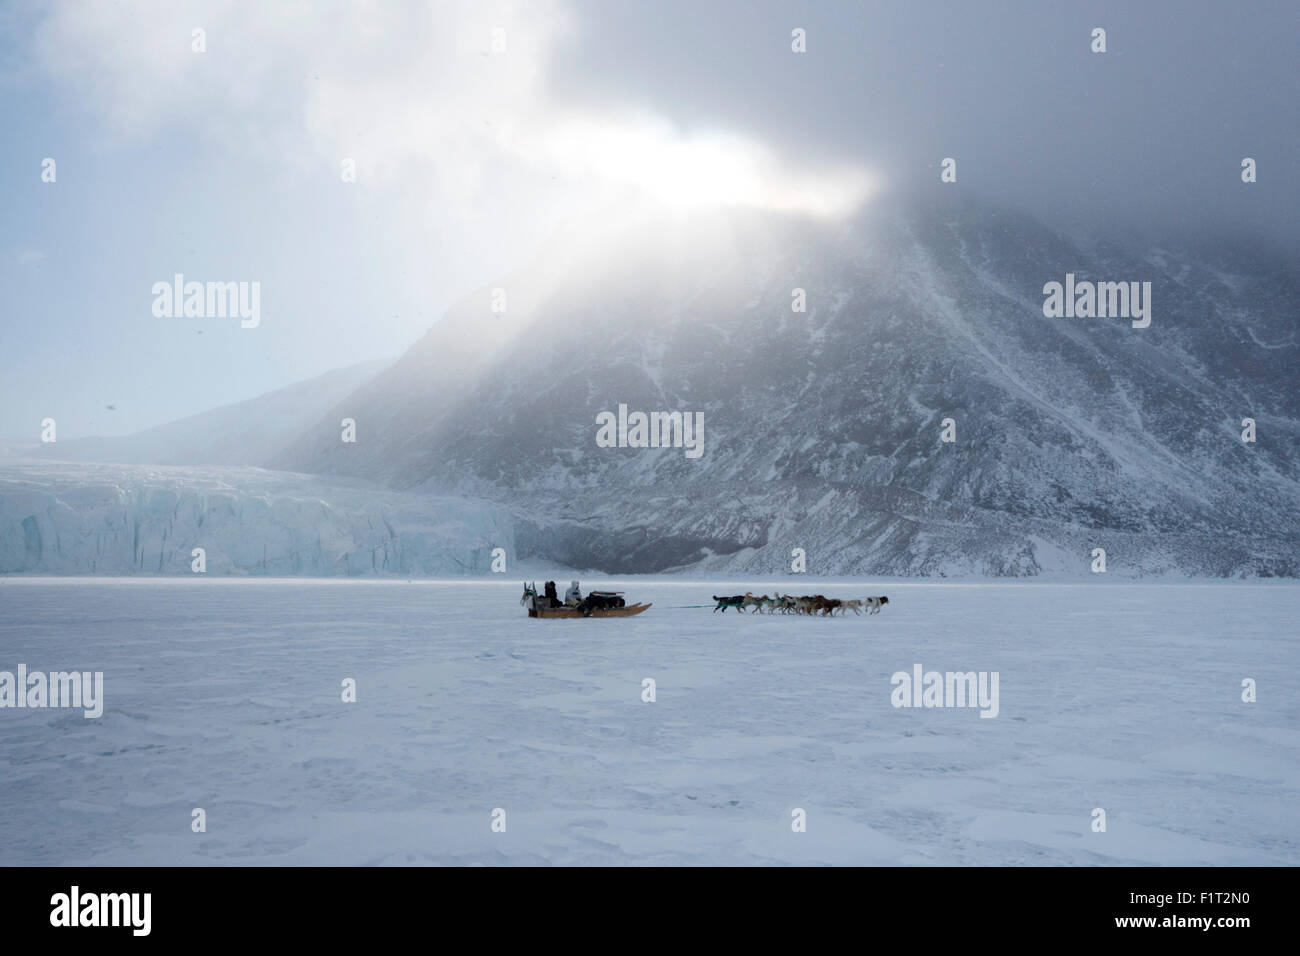 Cazador Inuit y su equipo de perros viajando en el mar de hielo, Groenlandia, Dinamarca, las regiones polares Foto de stock